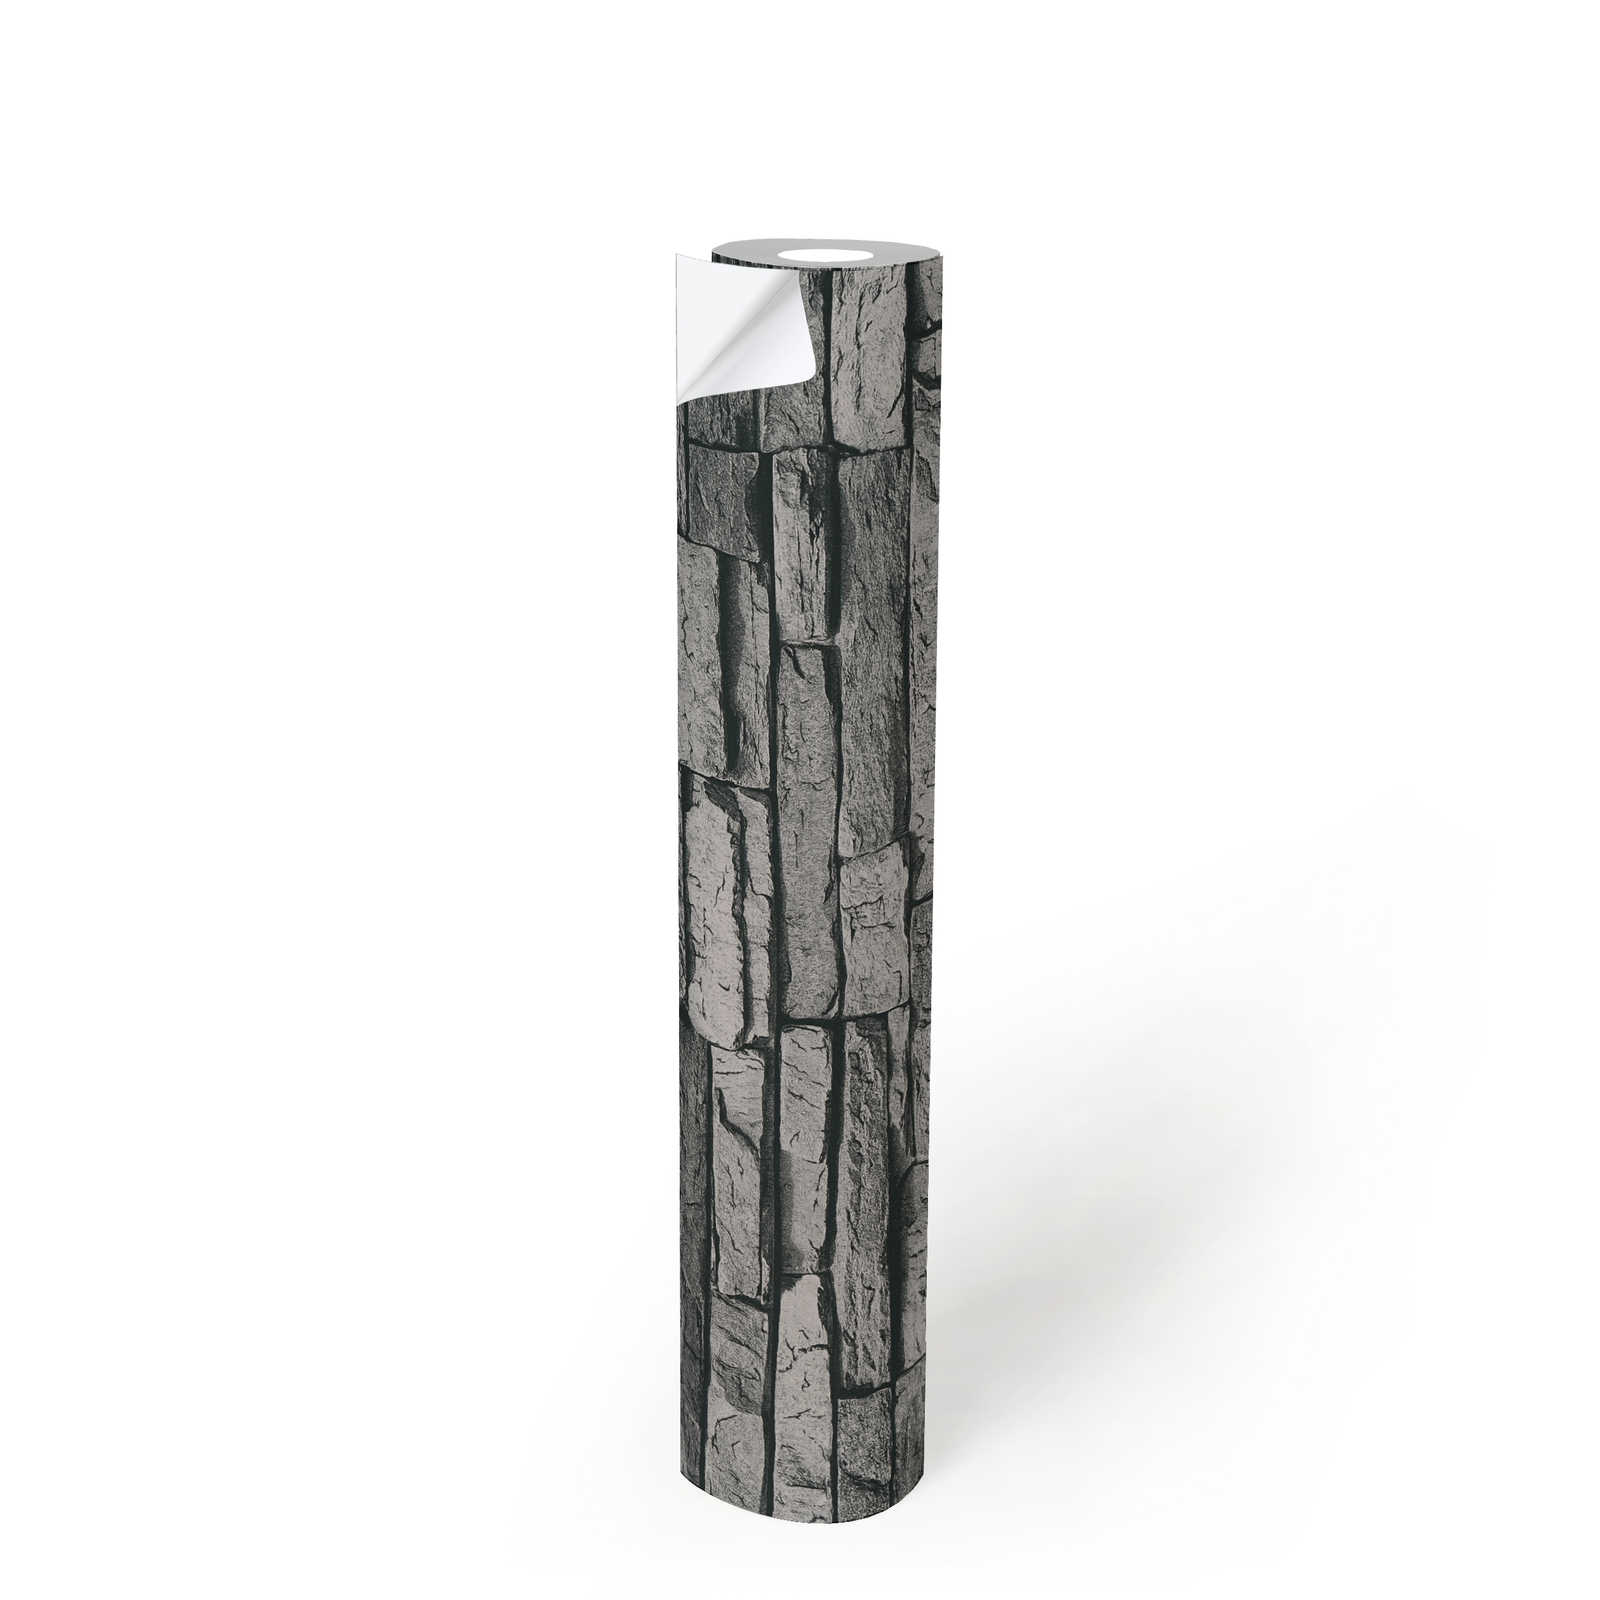             Papel pintado autoadhesivo | aspecto de piedra natural con efecto 3D - gris, negro
        